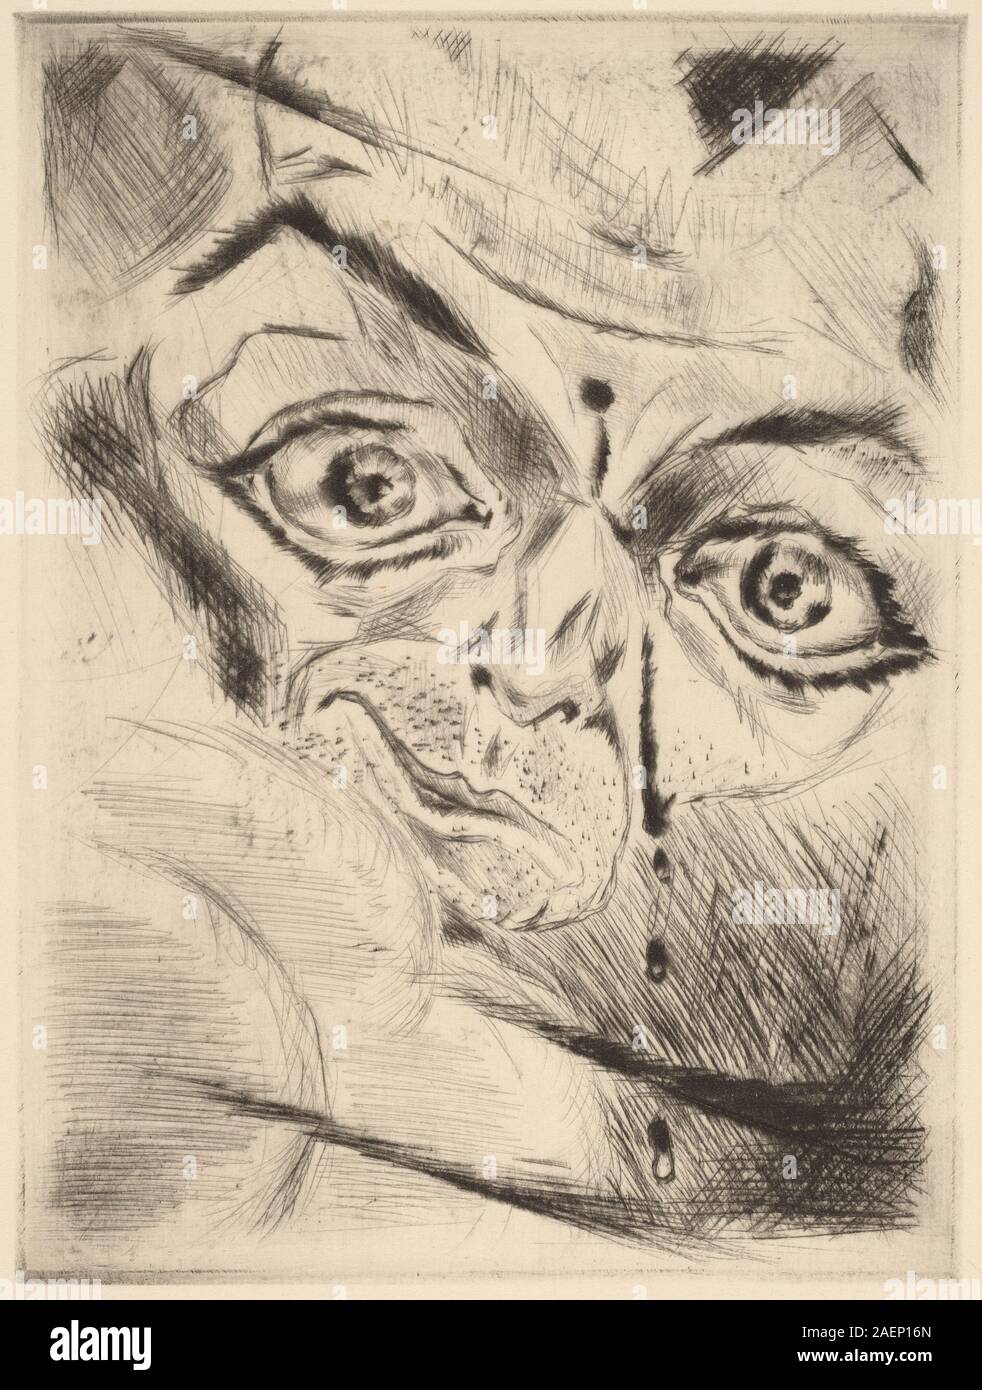 Walter Gramatté, Peter with a Gunshot Wound in His Forehead, 1918, Peter with a Gunshot Wound in His Forehead; 1918 date Stock Photo